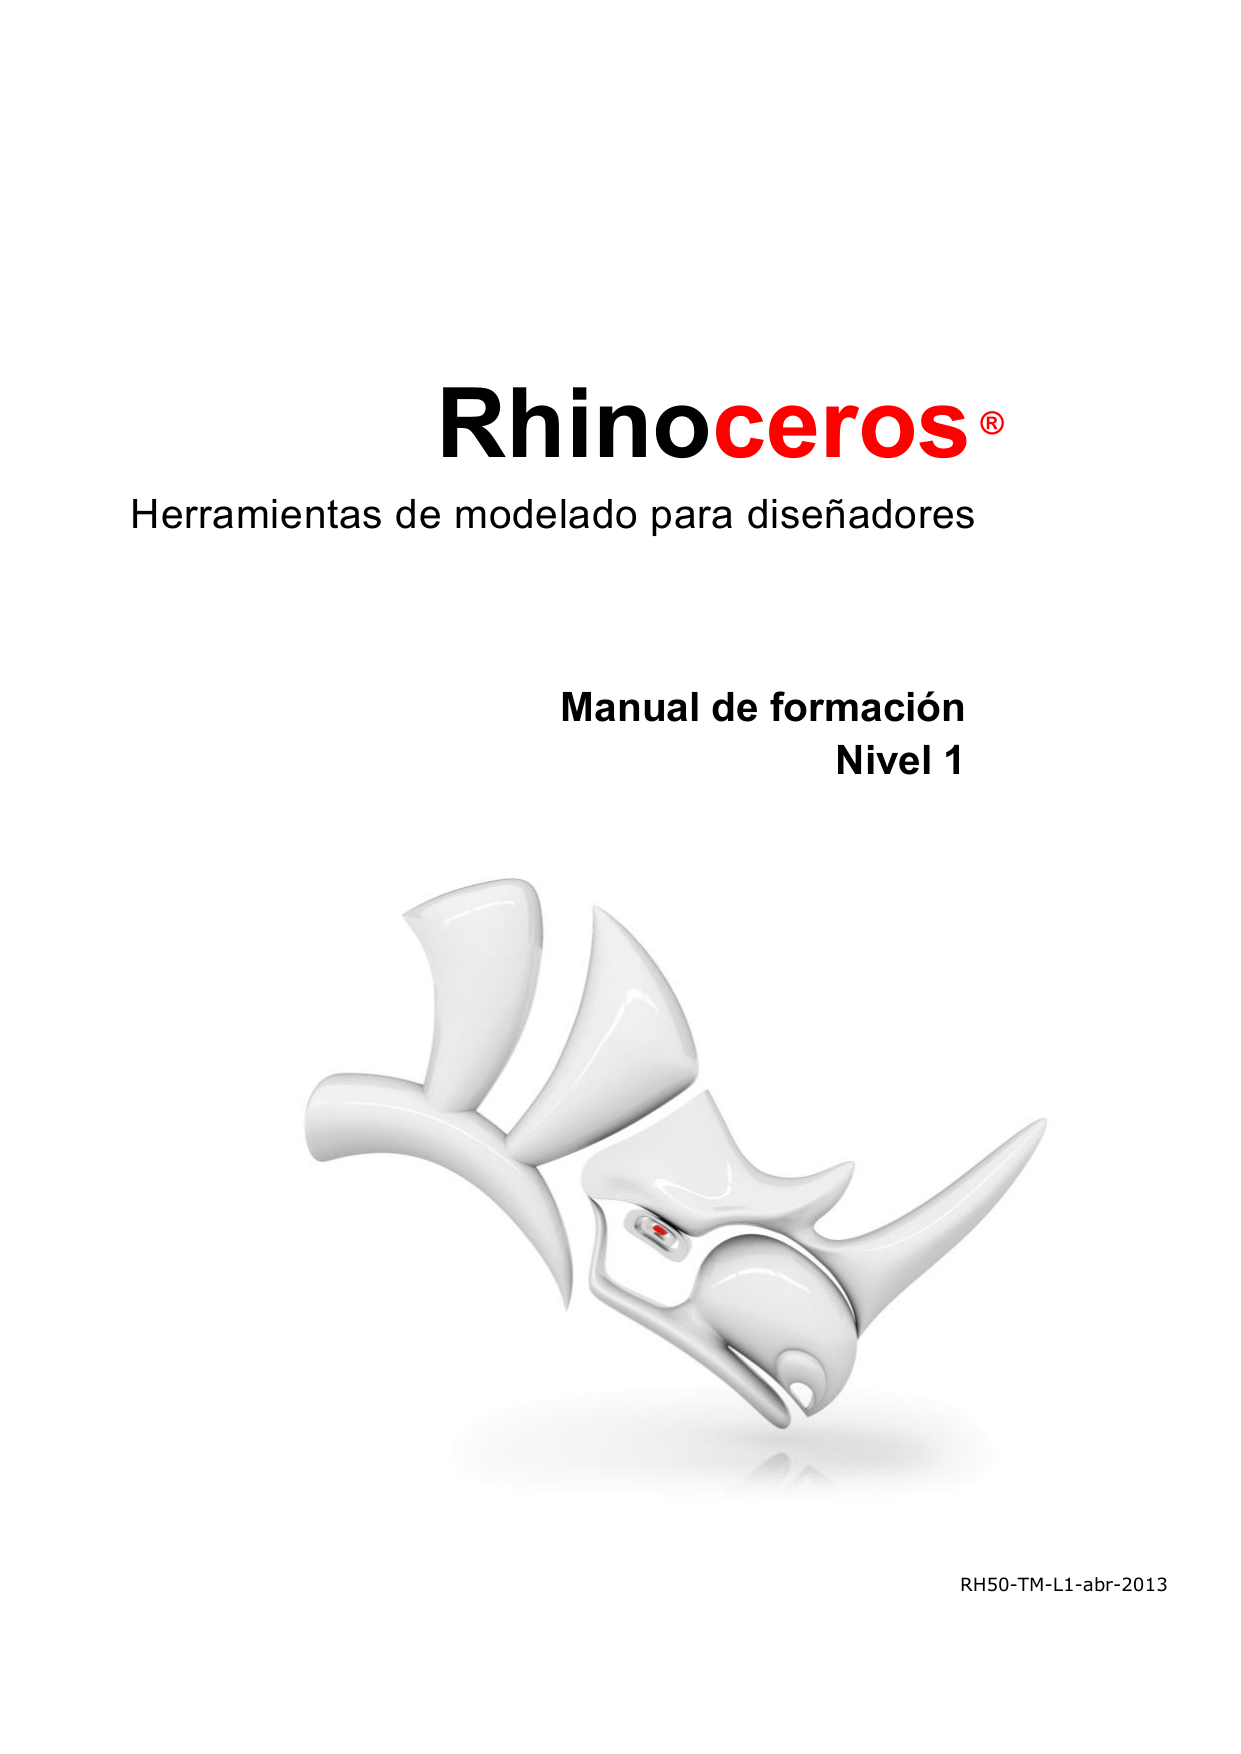 Rhinoceros 5 tutorial pdf